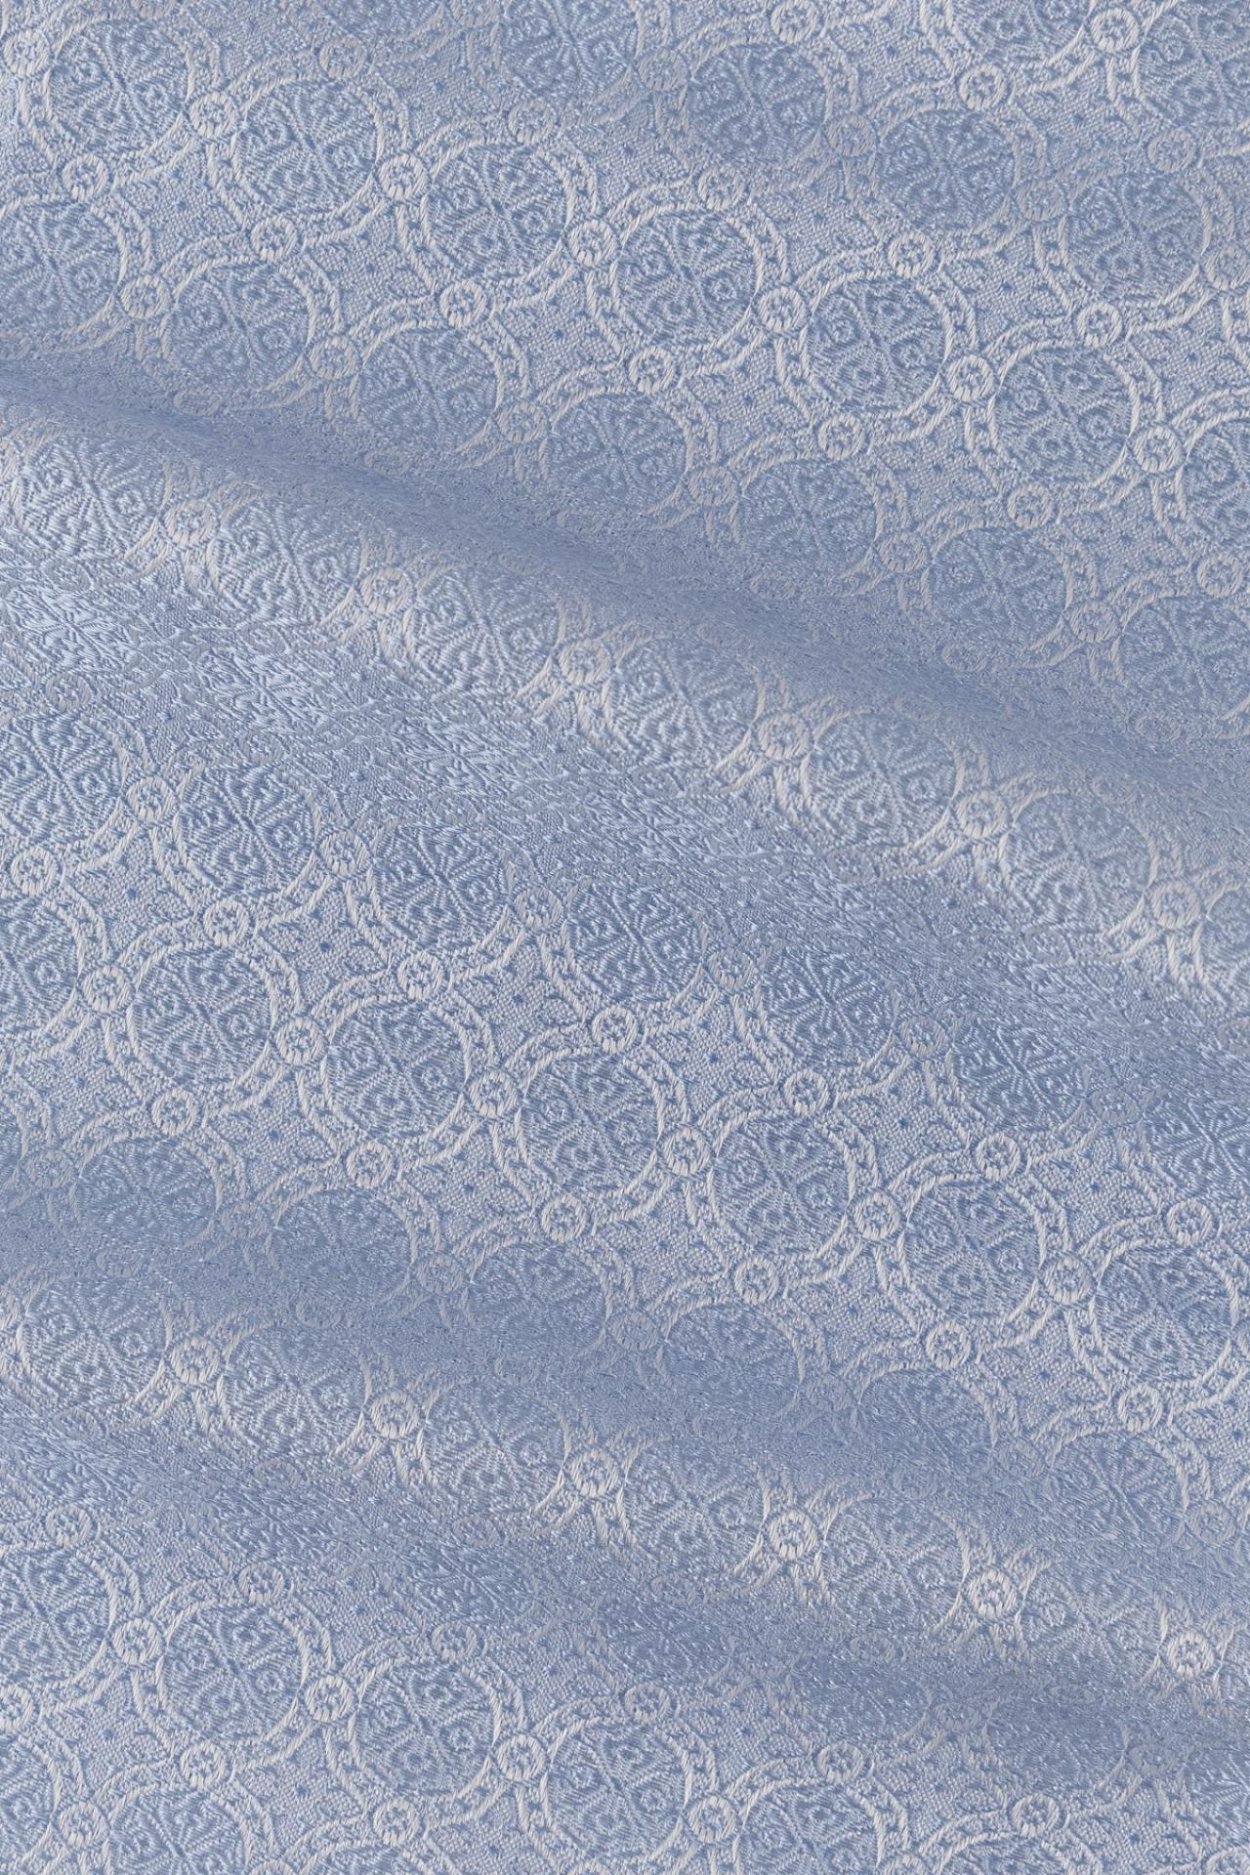 Světle modrý hedvábný kapesníček s jemným vzorem